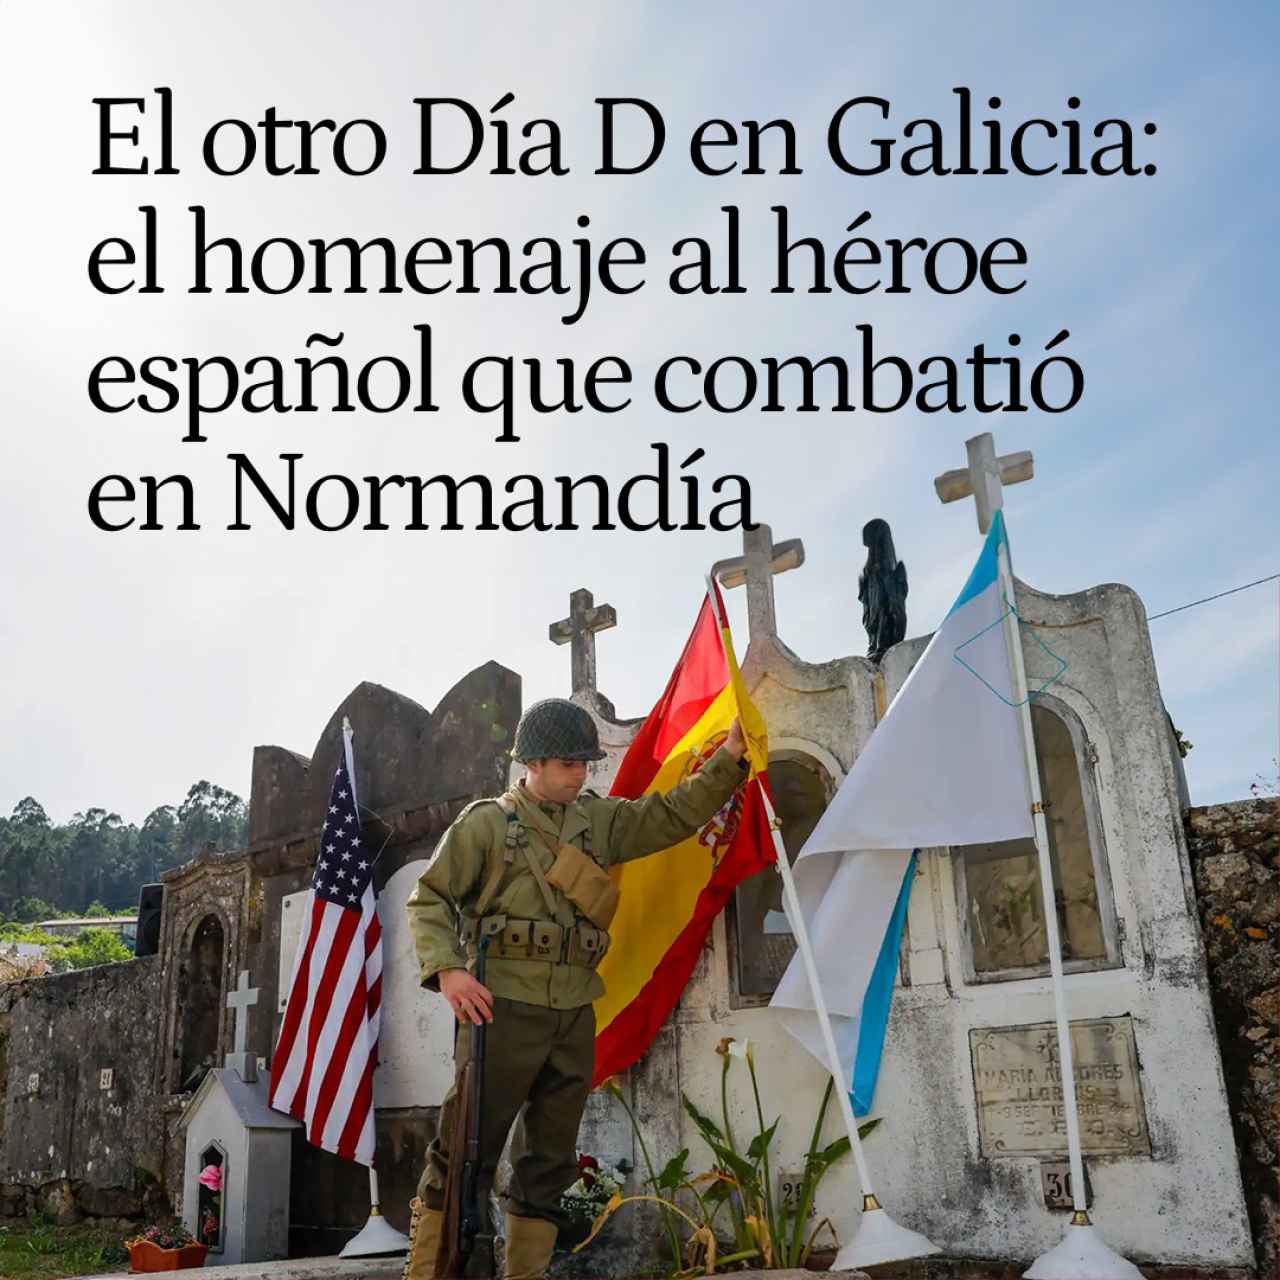 El otro Día D en un pueblo de Galicia: el homenaje al único héroe español que combatió en Normandía